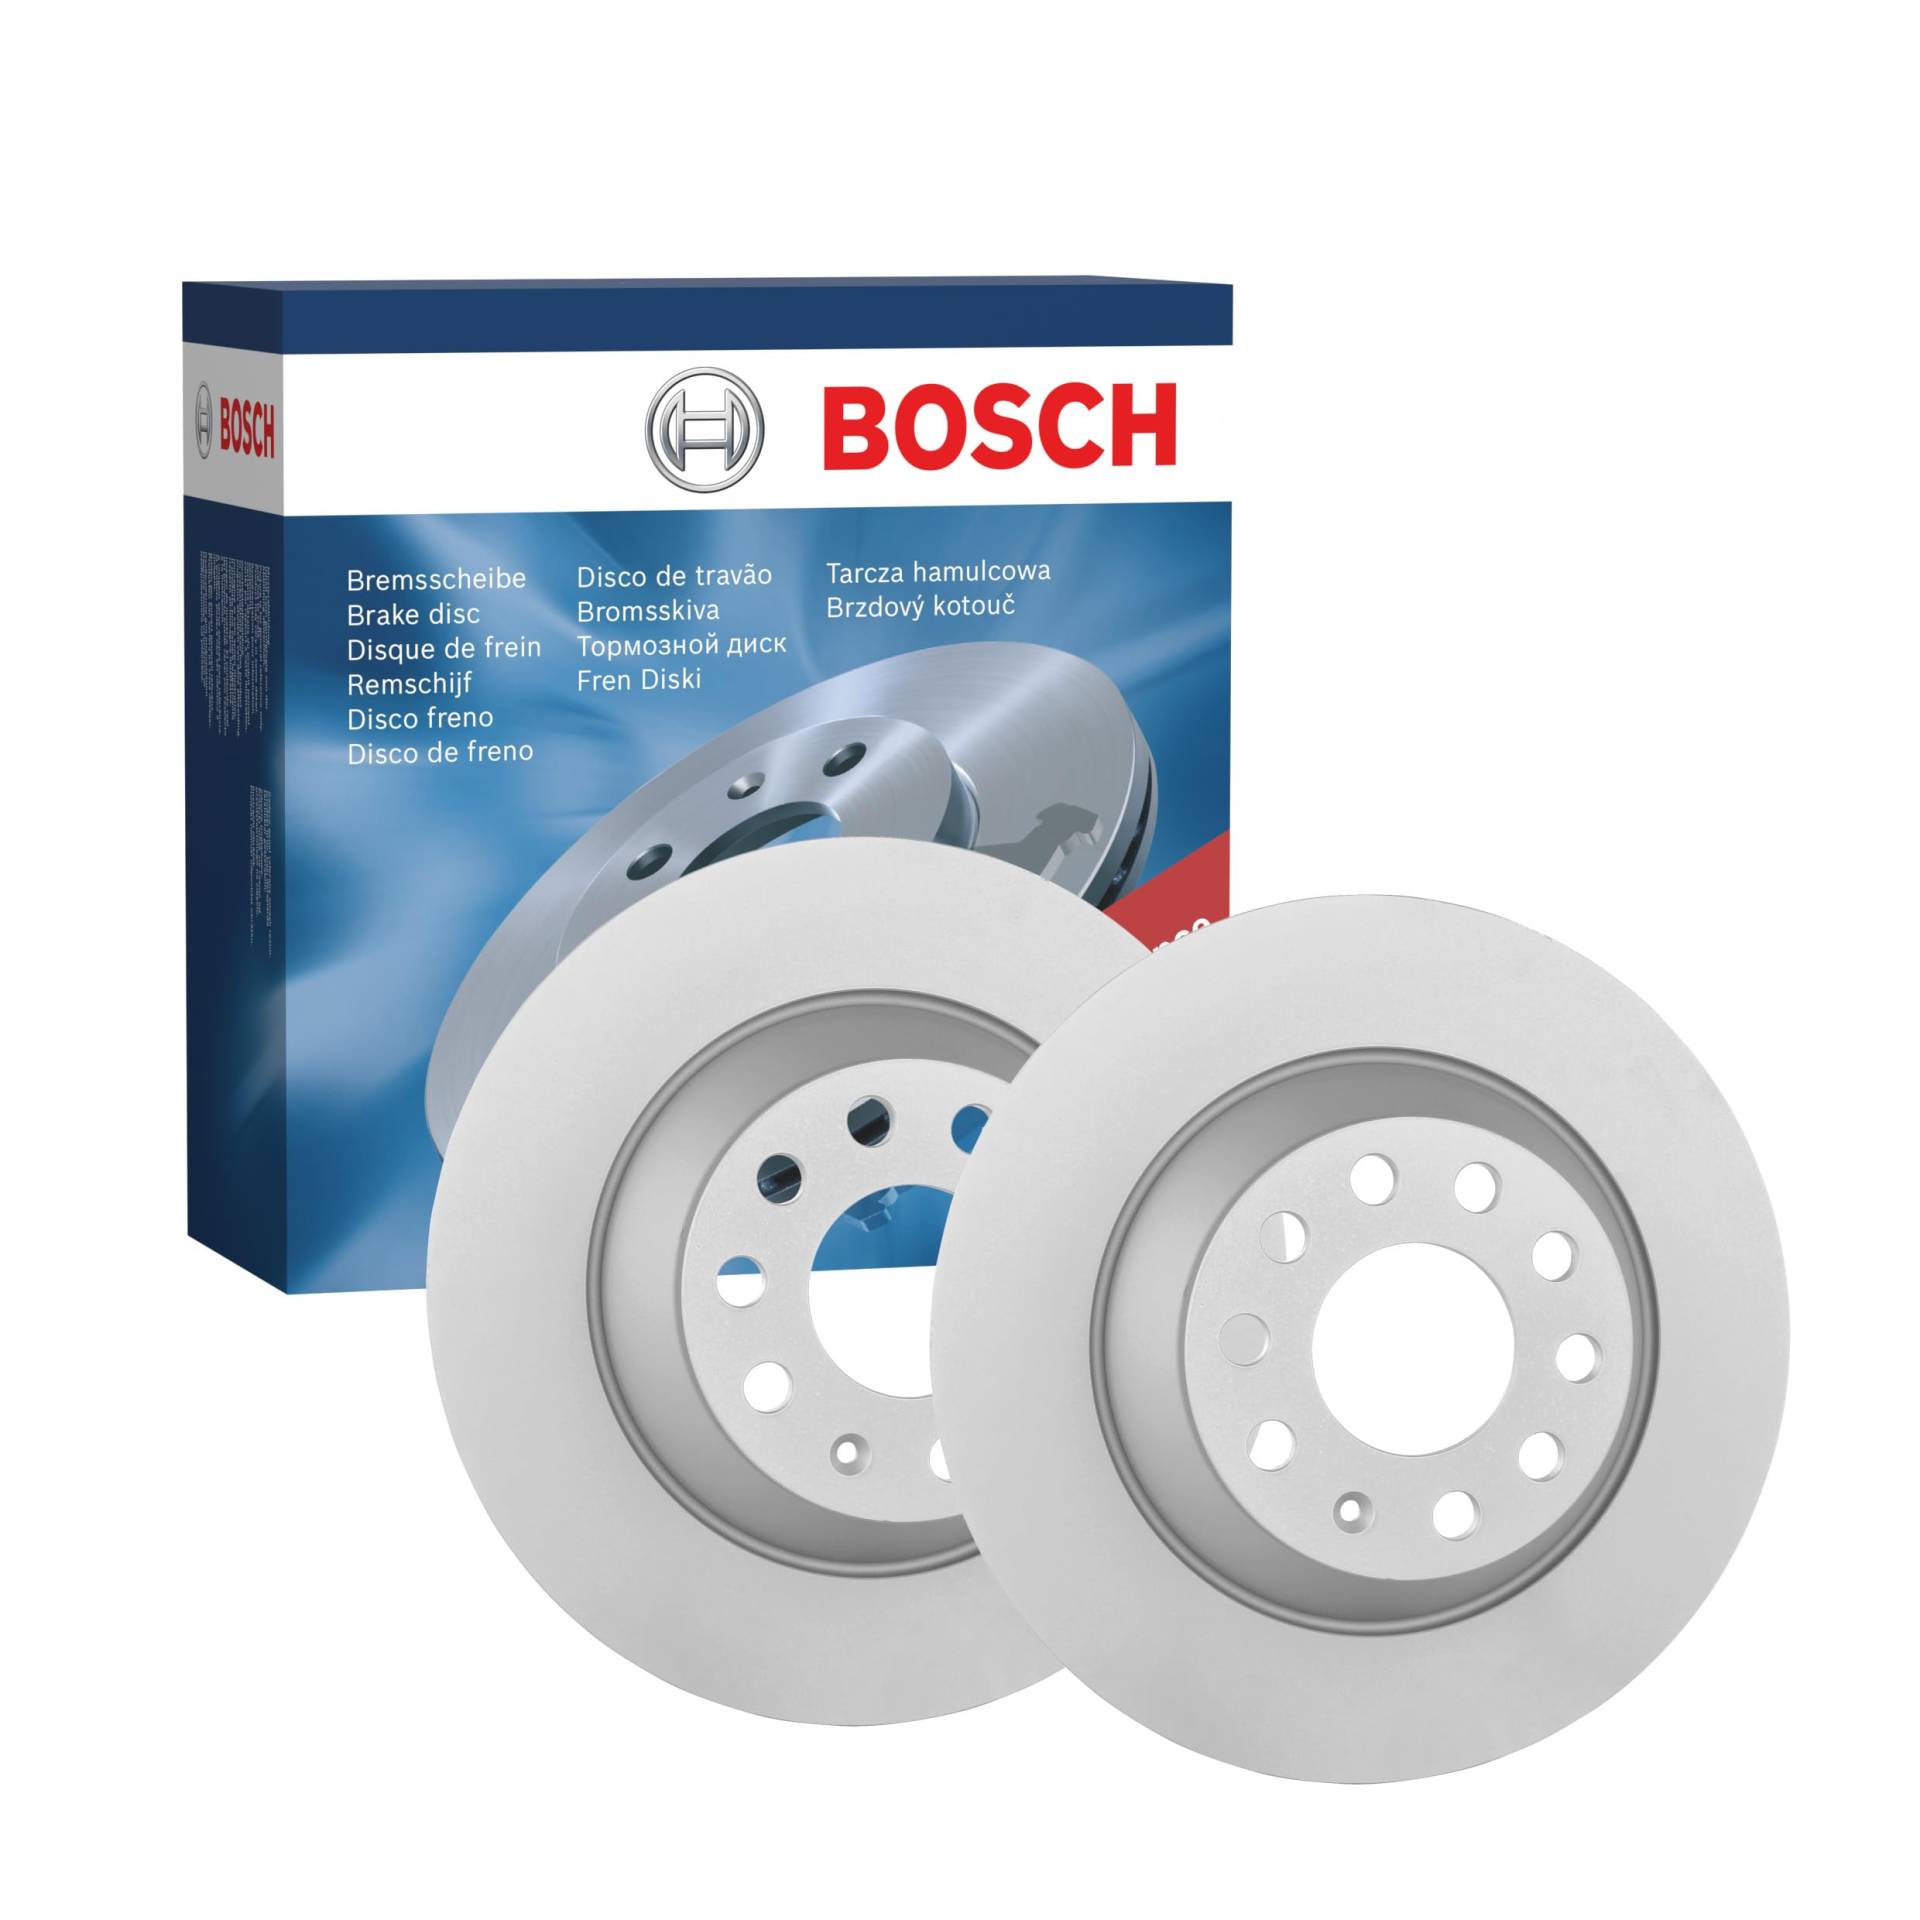 Bosch BD1135 Bremsscheiben - Hinterachse - ECE-R90 Zertifizierung - zwei Bremsscheiben pro Set von Bosch Automotive